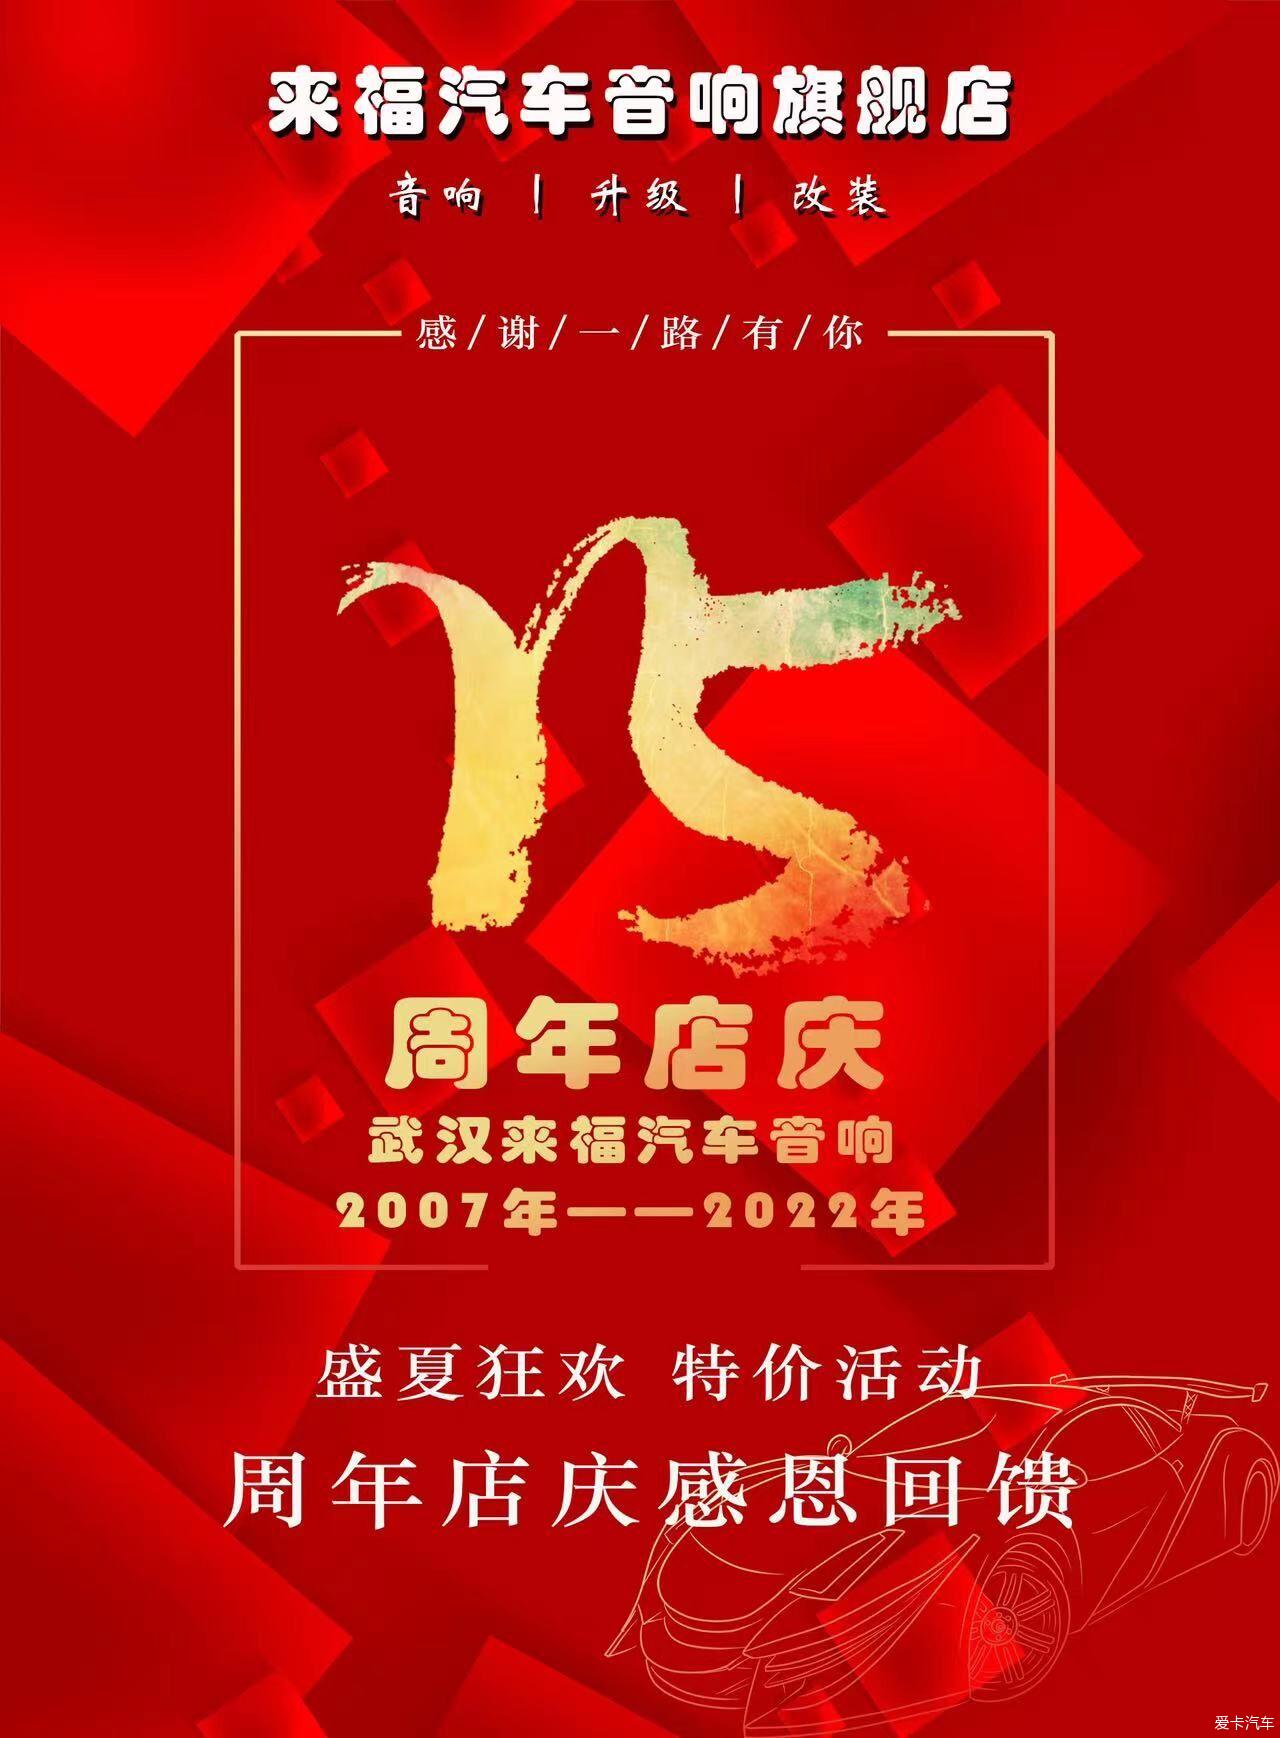 武汉来福15周年店庆活动正火爆开启中